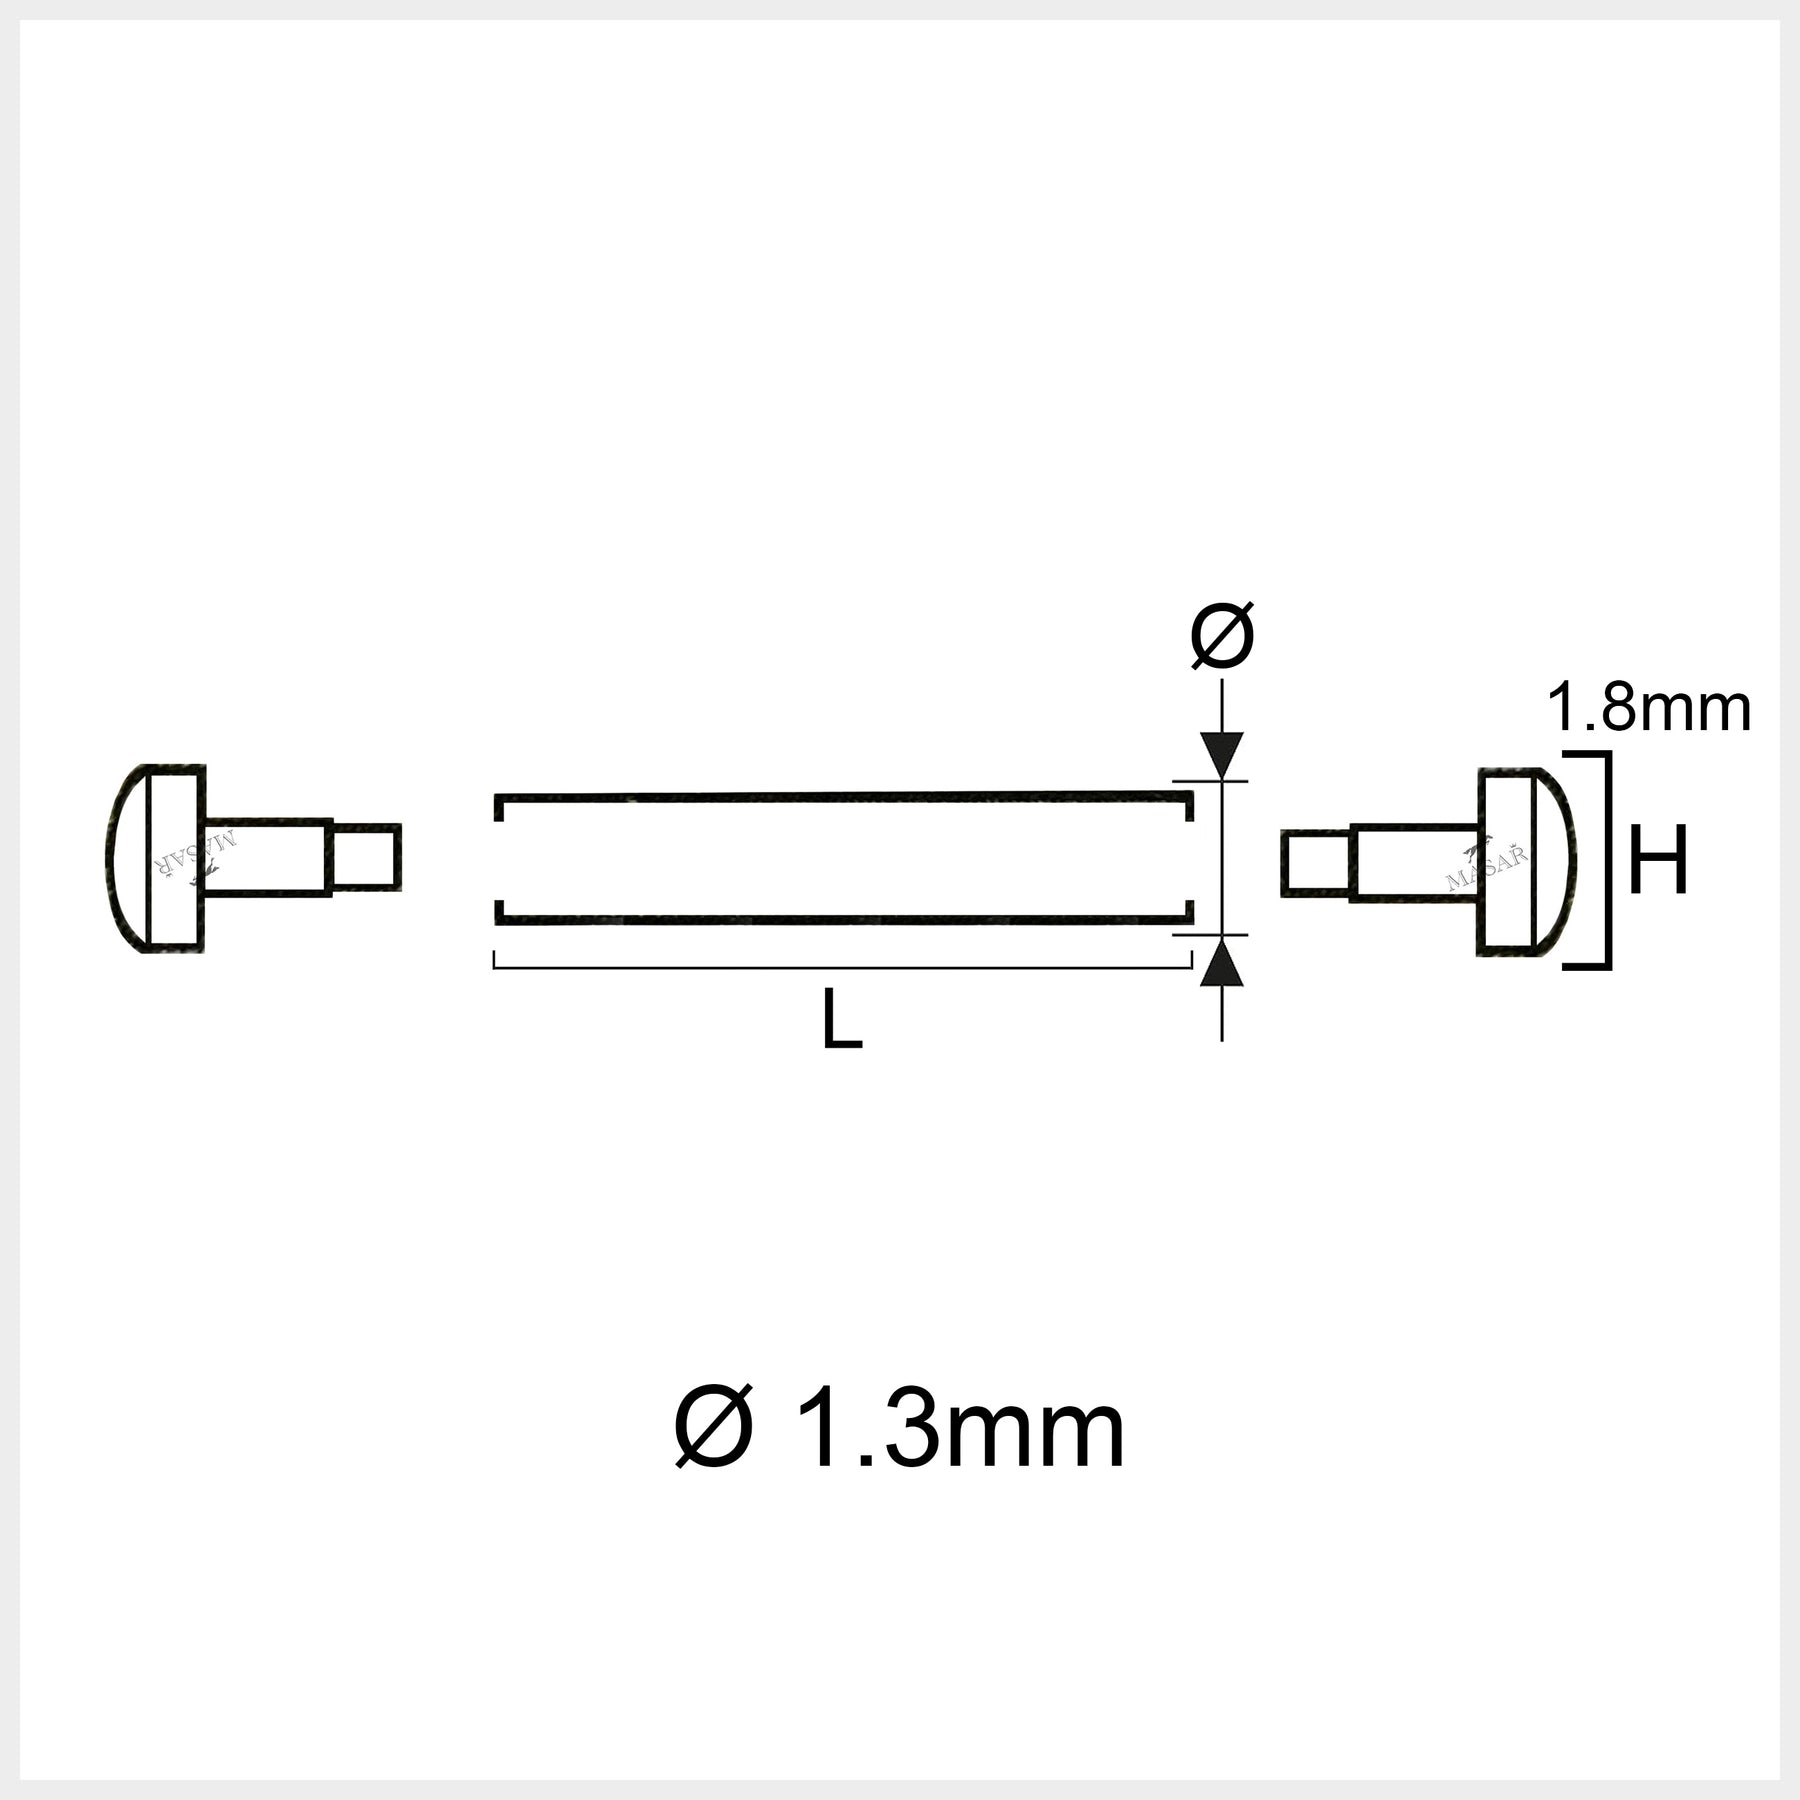 10mm à 30mm Ø 1.3mm Pins with Tubes Raccords – Rivets, Barres de pression du bracelet - Lot de 2 Pcs